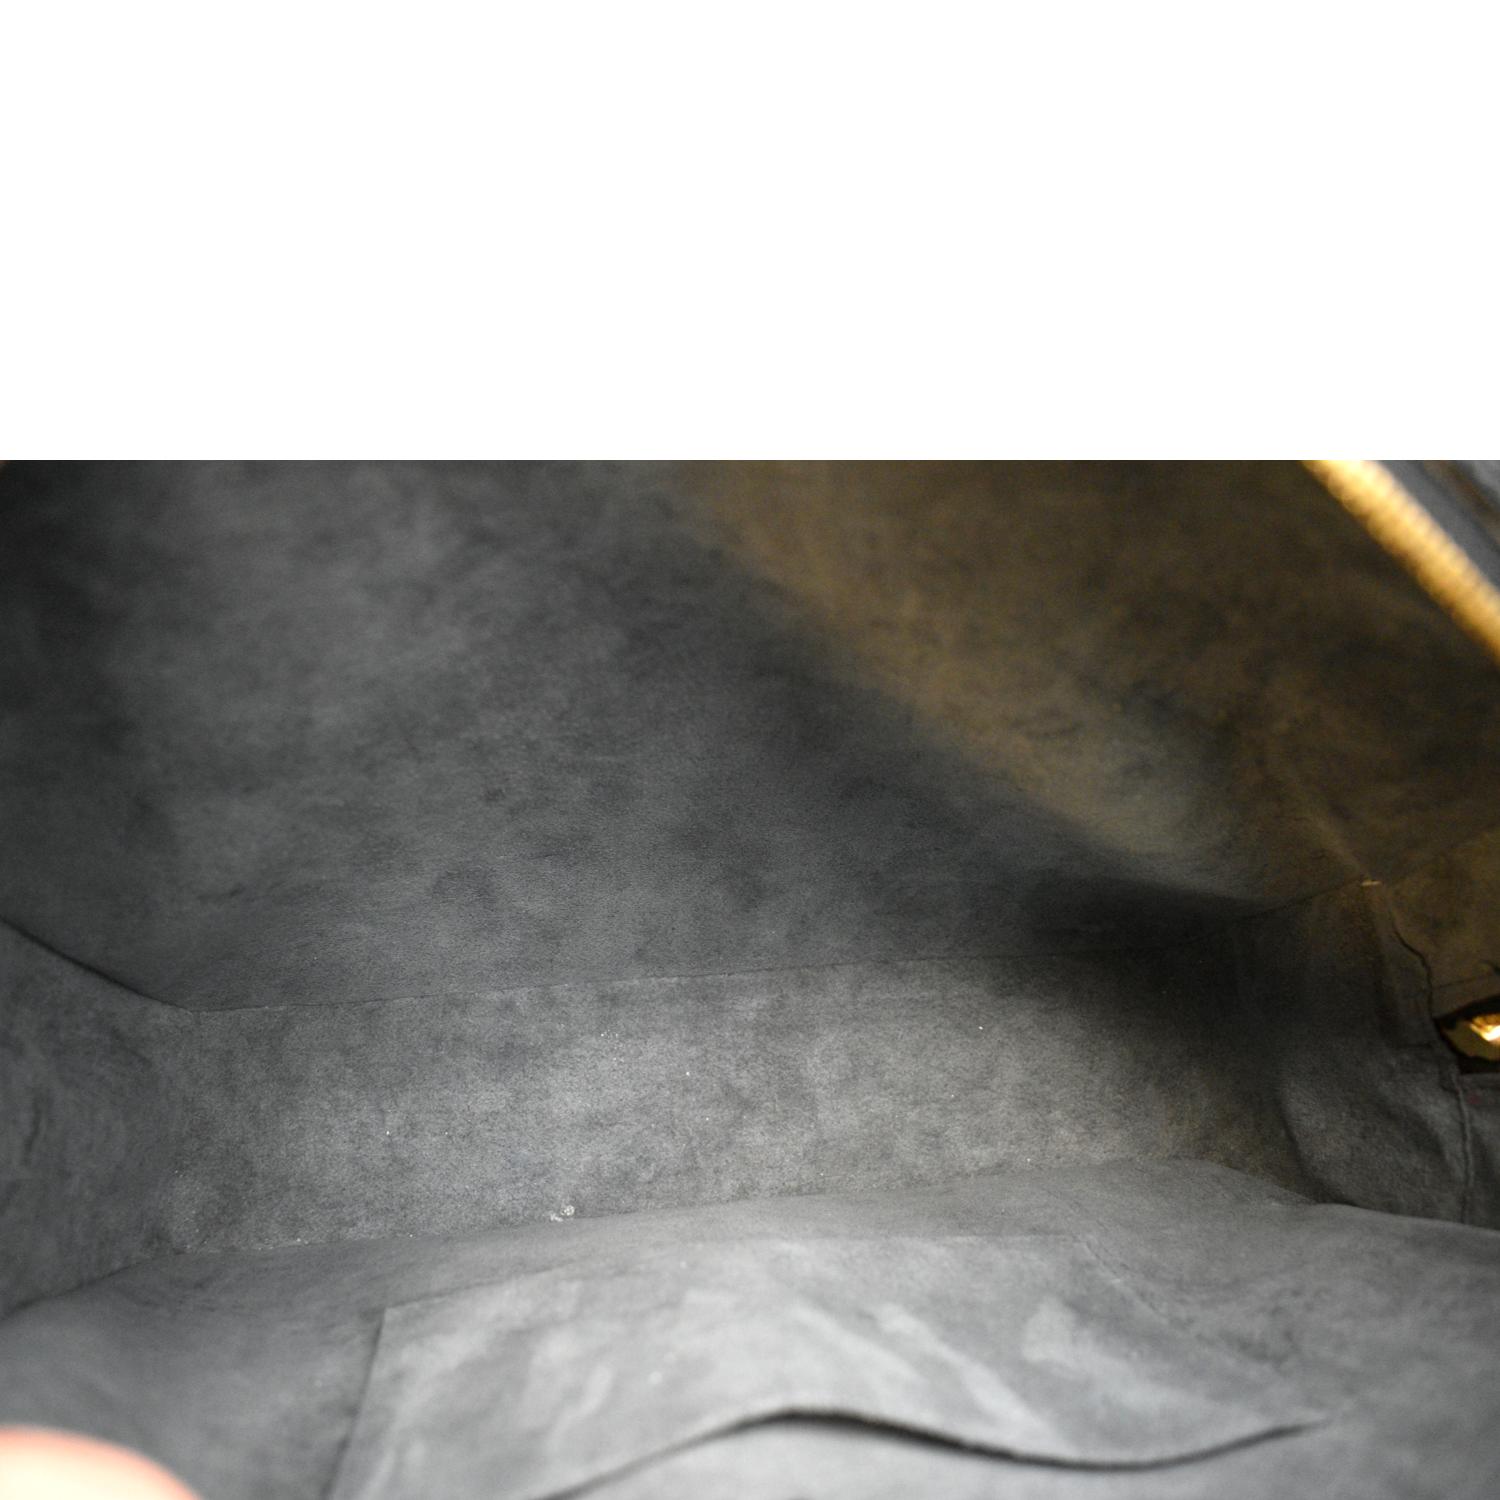 Louis Vuitton Voltaire Noir 872556 Black Epi Leather Shoulder Bag, Louis  Vuitton